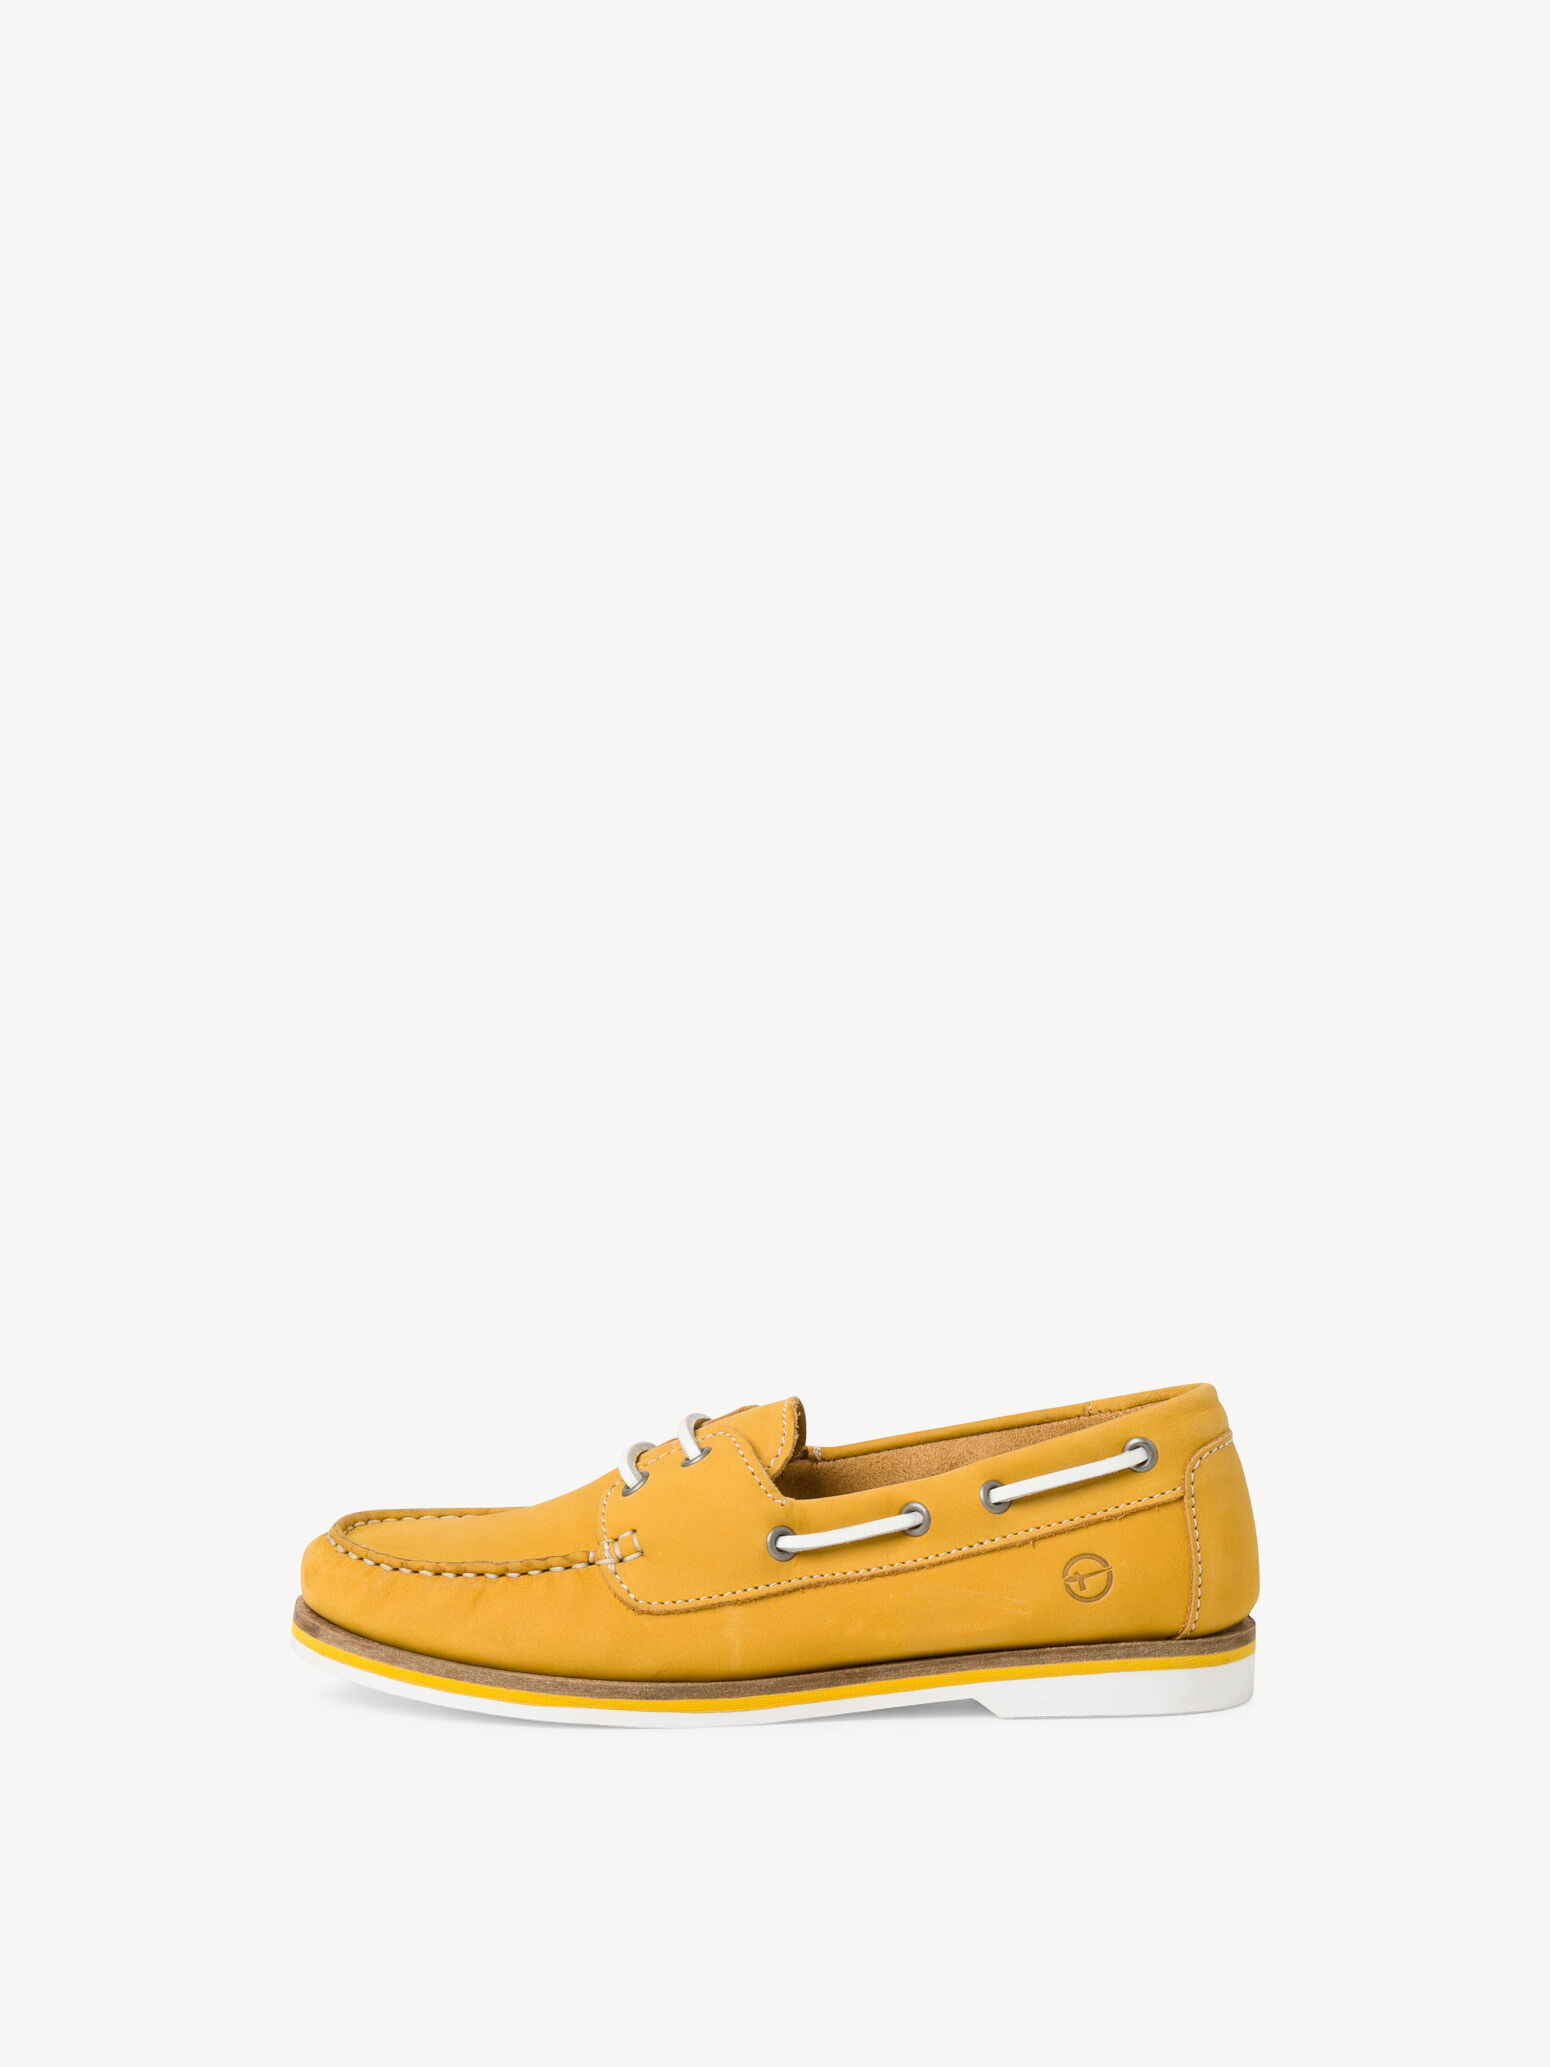 Schoenen damesschoenen Instappers Mocassins Handgemaakte leren mocassin schoen loafer geel 